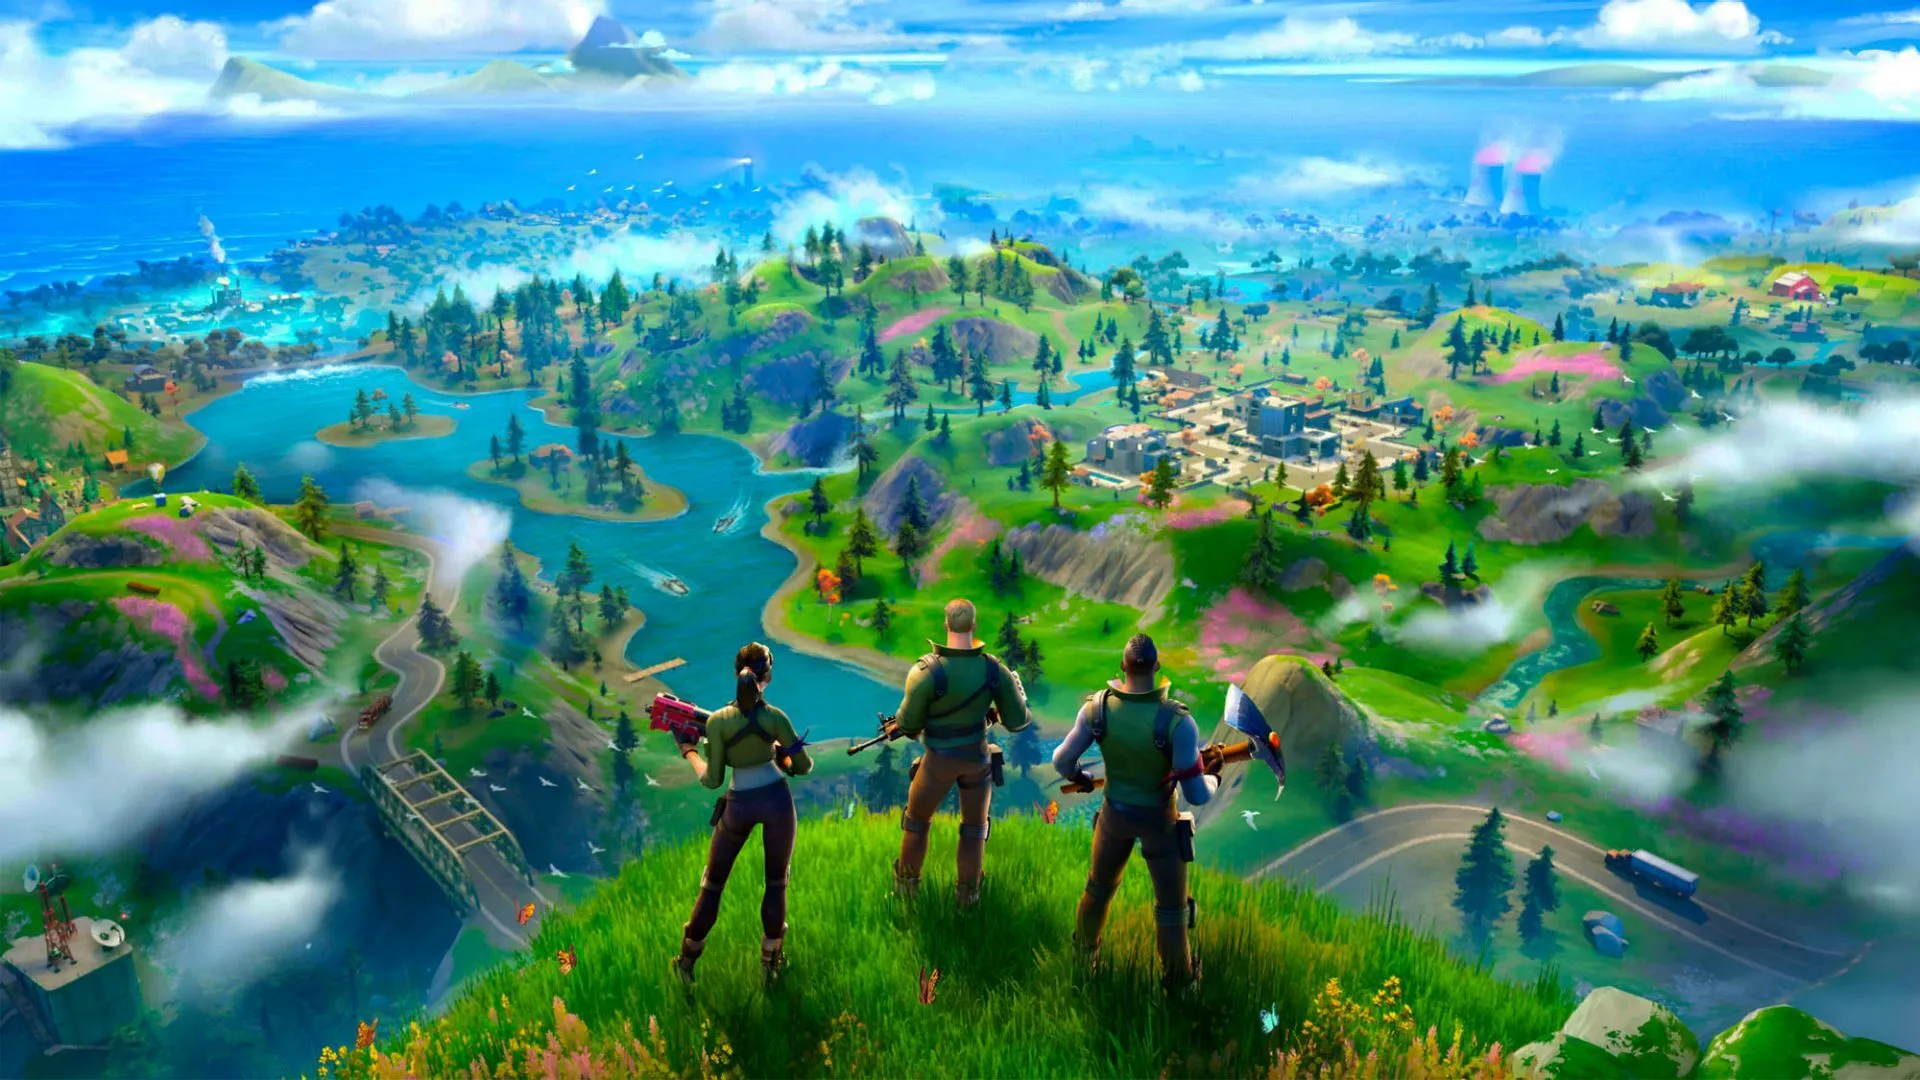 Imagen del juego Fortnite que muestra a tres personajes mirando un paisaje forestal verde y brillante.